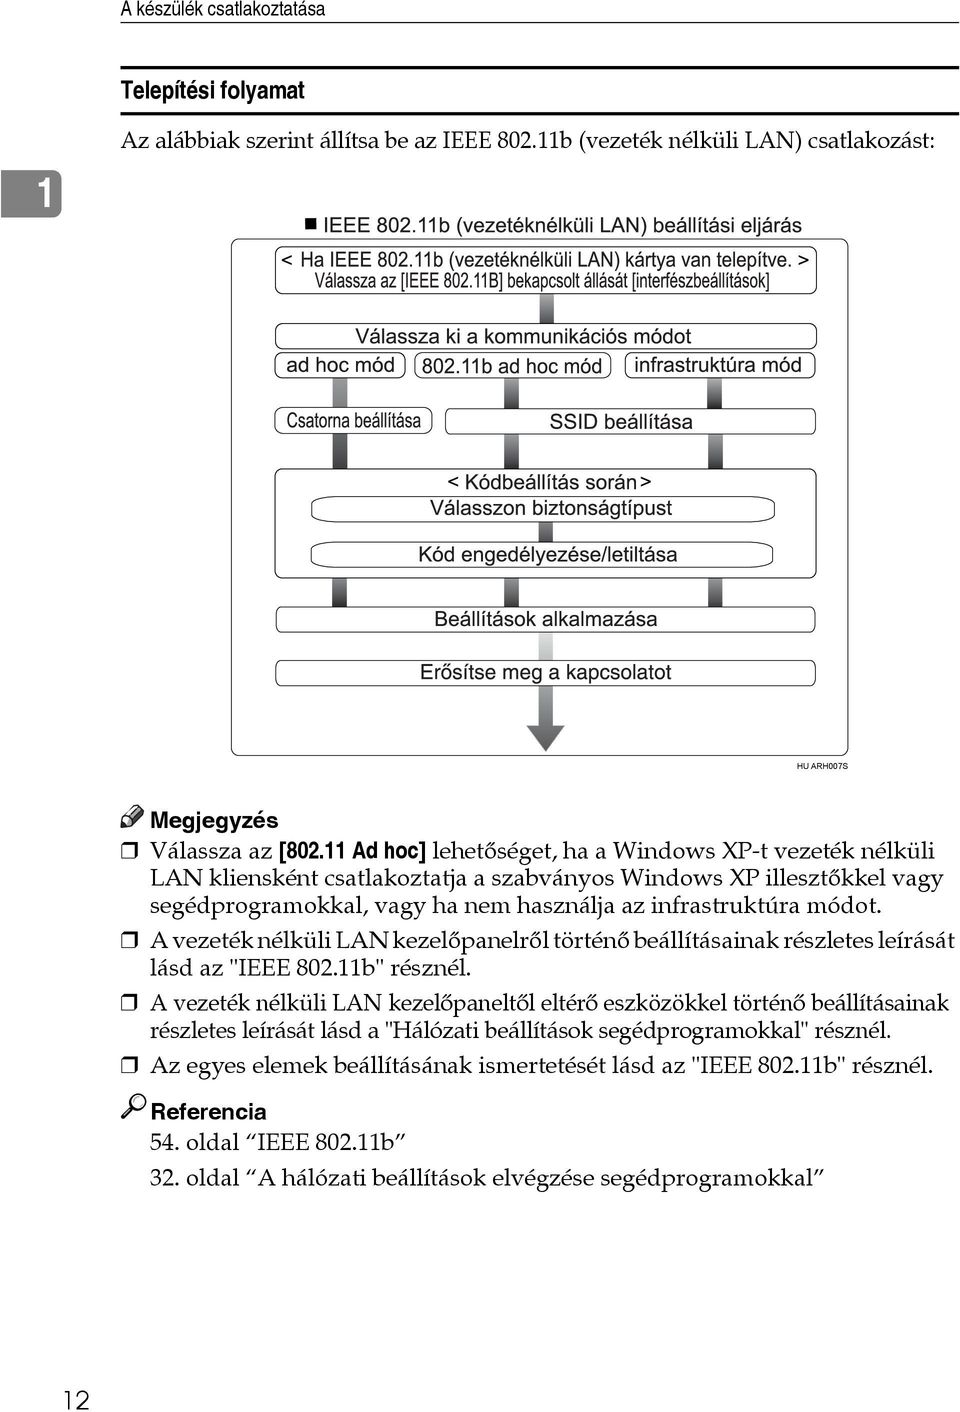 A vezeték nélküli LAN kezelõpanelrõl történõ beállításainak részletes leírását lásd az "IEEE 802.11b" résznél.